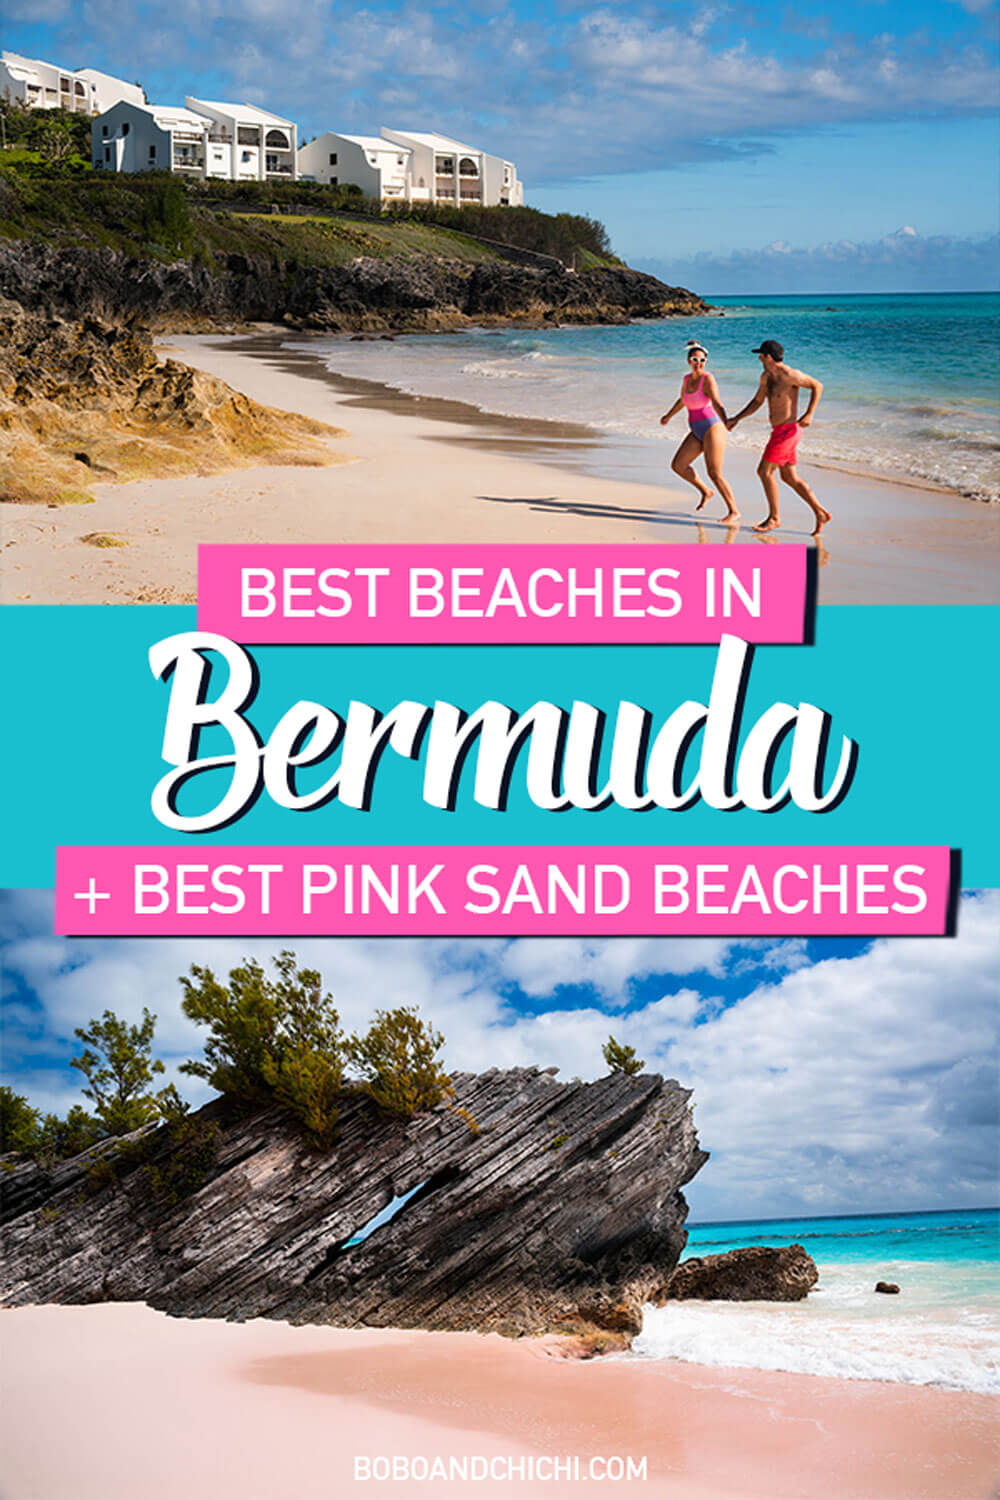 Best-beaches-in-Bermuda